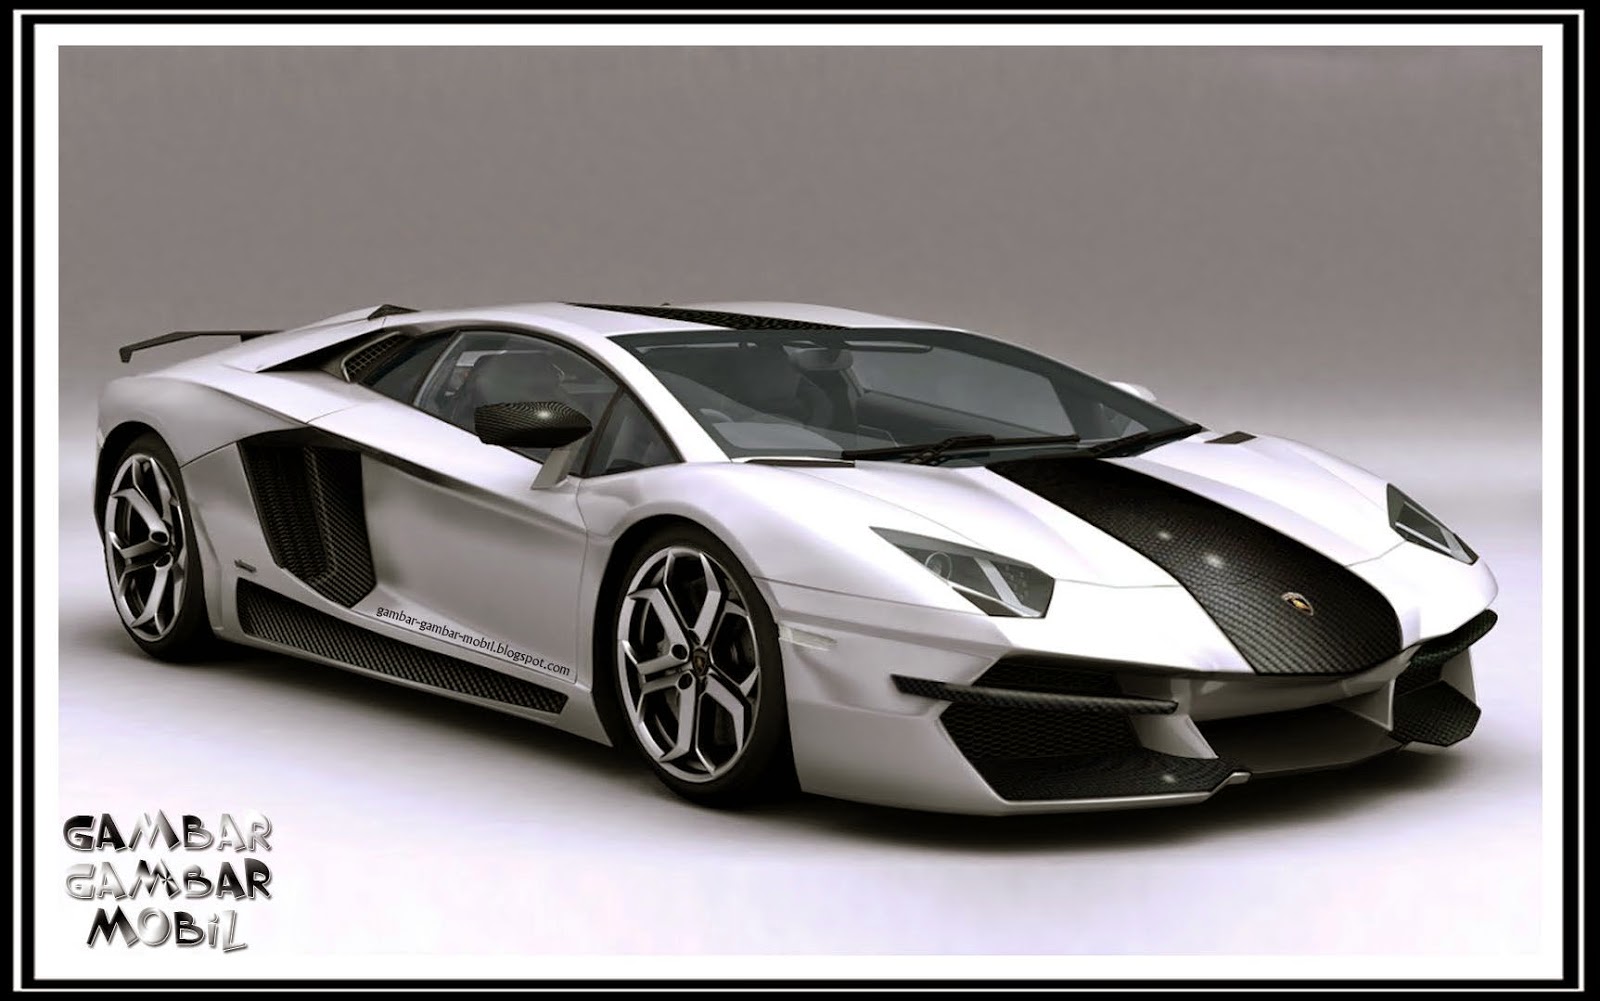 Foto Mobil Lamborghini Baru Modifotto